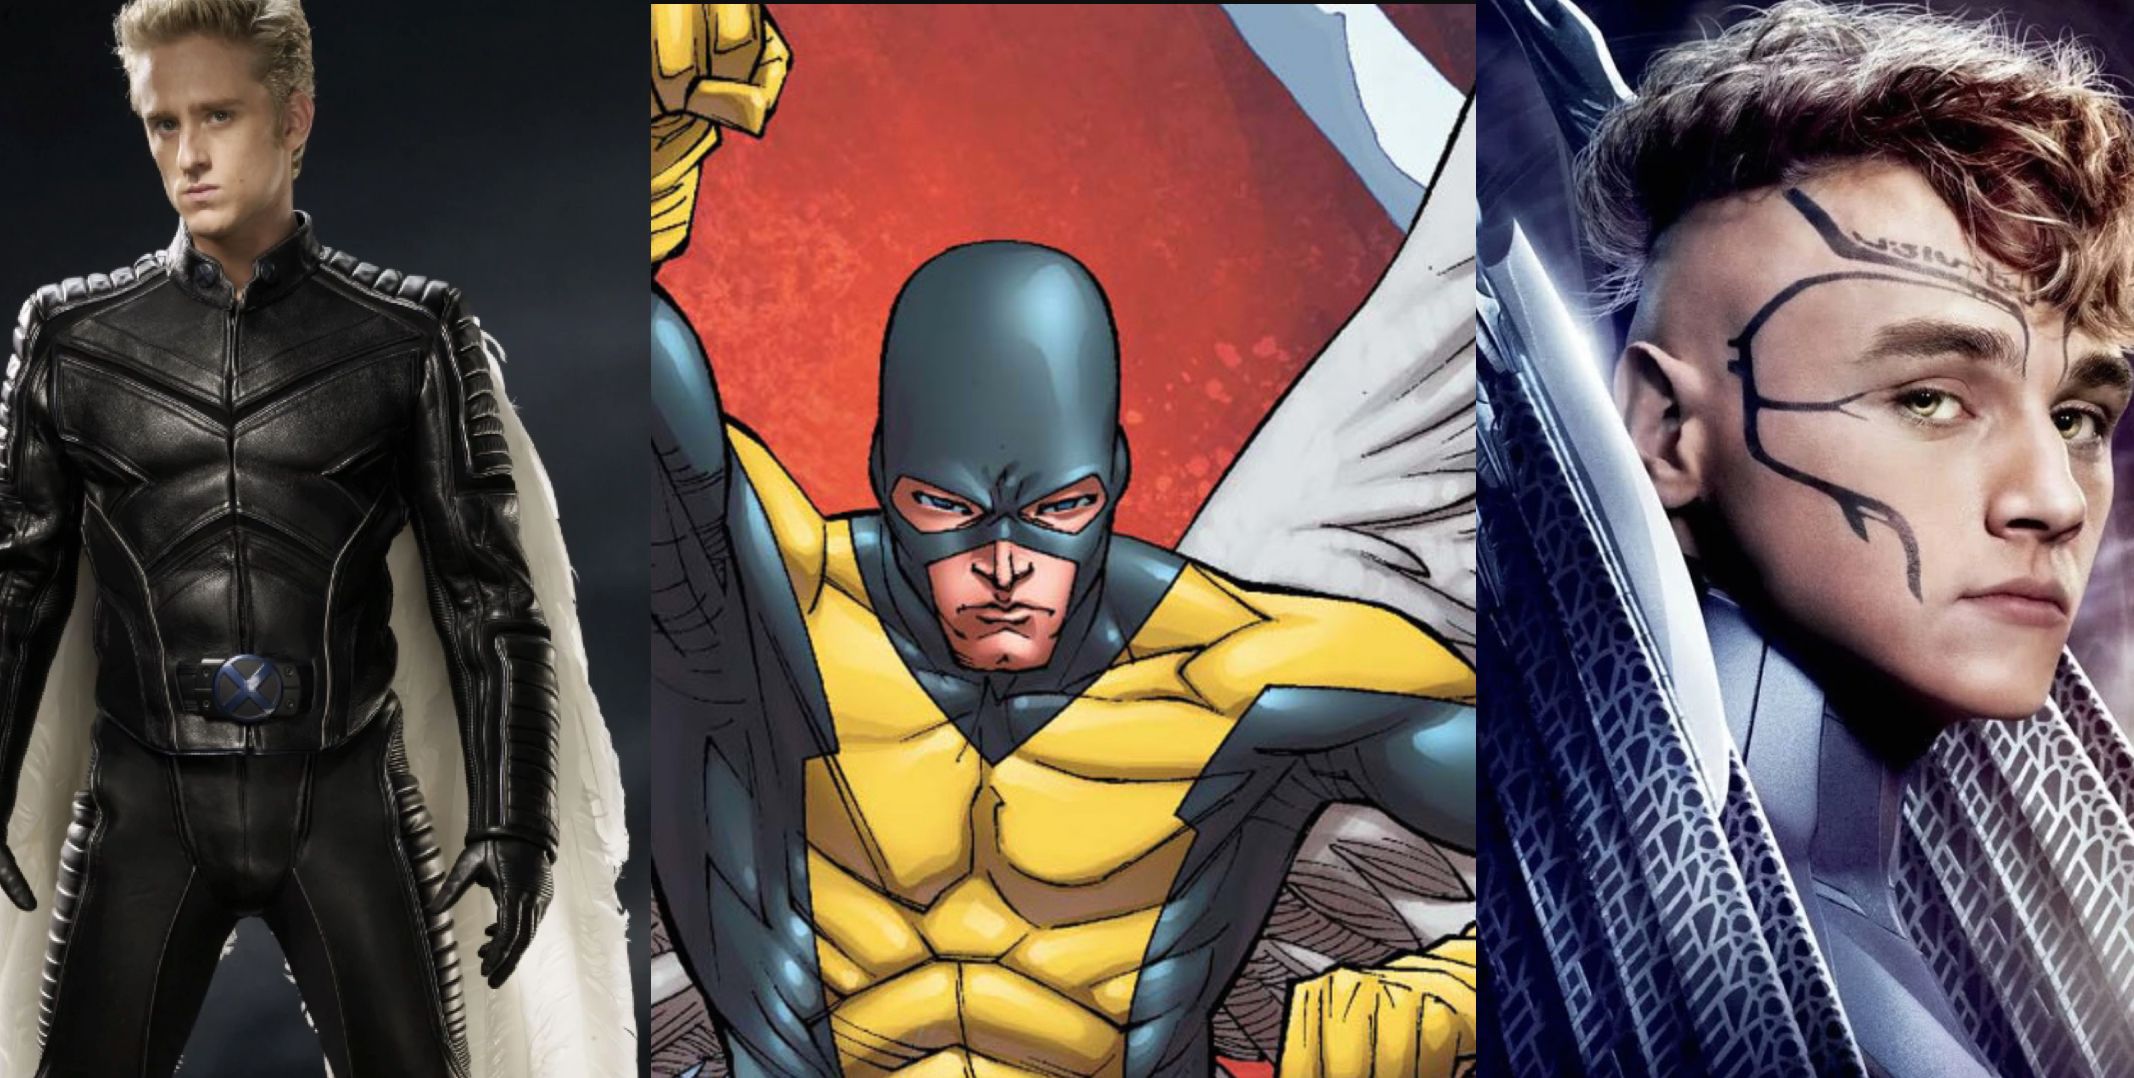 Warren Worthington Angel in X-Men Movies and Comics